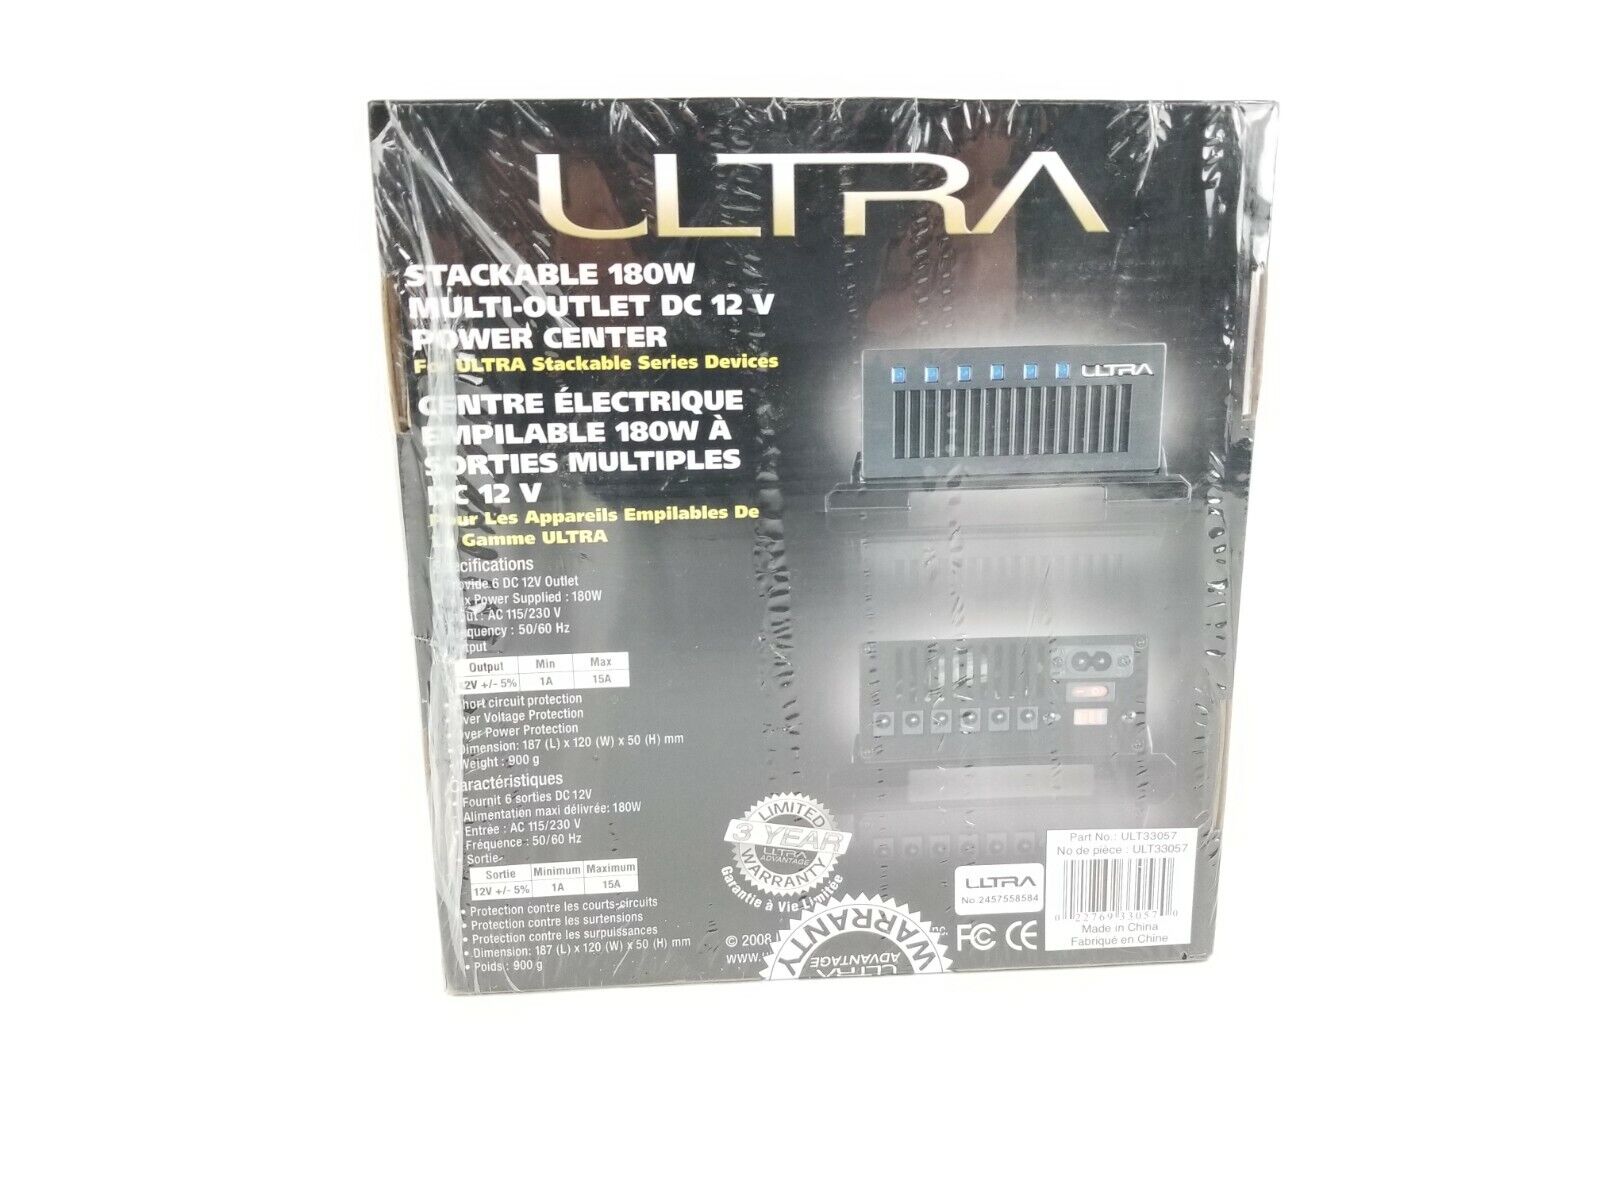 Ultra Stackable Power Center ULT33057 - Power Adapter - 180 Watt